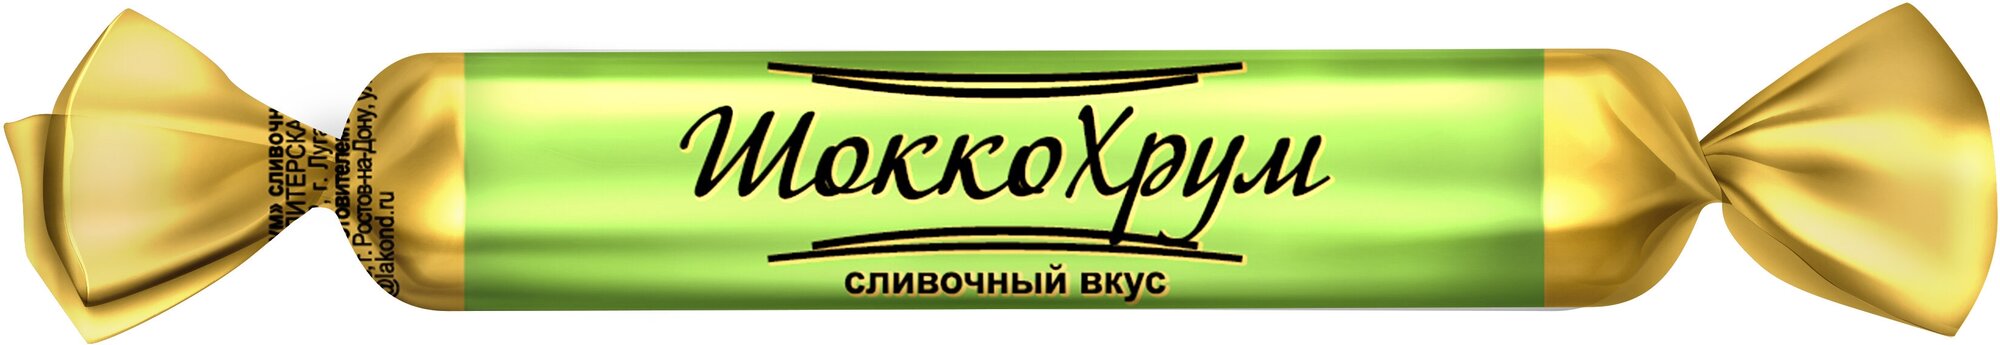 Хрустящие трубочки "ШоккоХрум" сливочный вкус, ТМ Лаконд, 350 гр. - фотография № 2